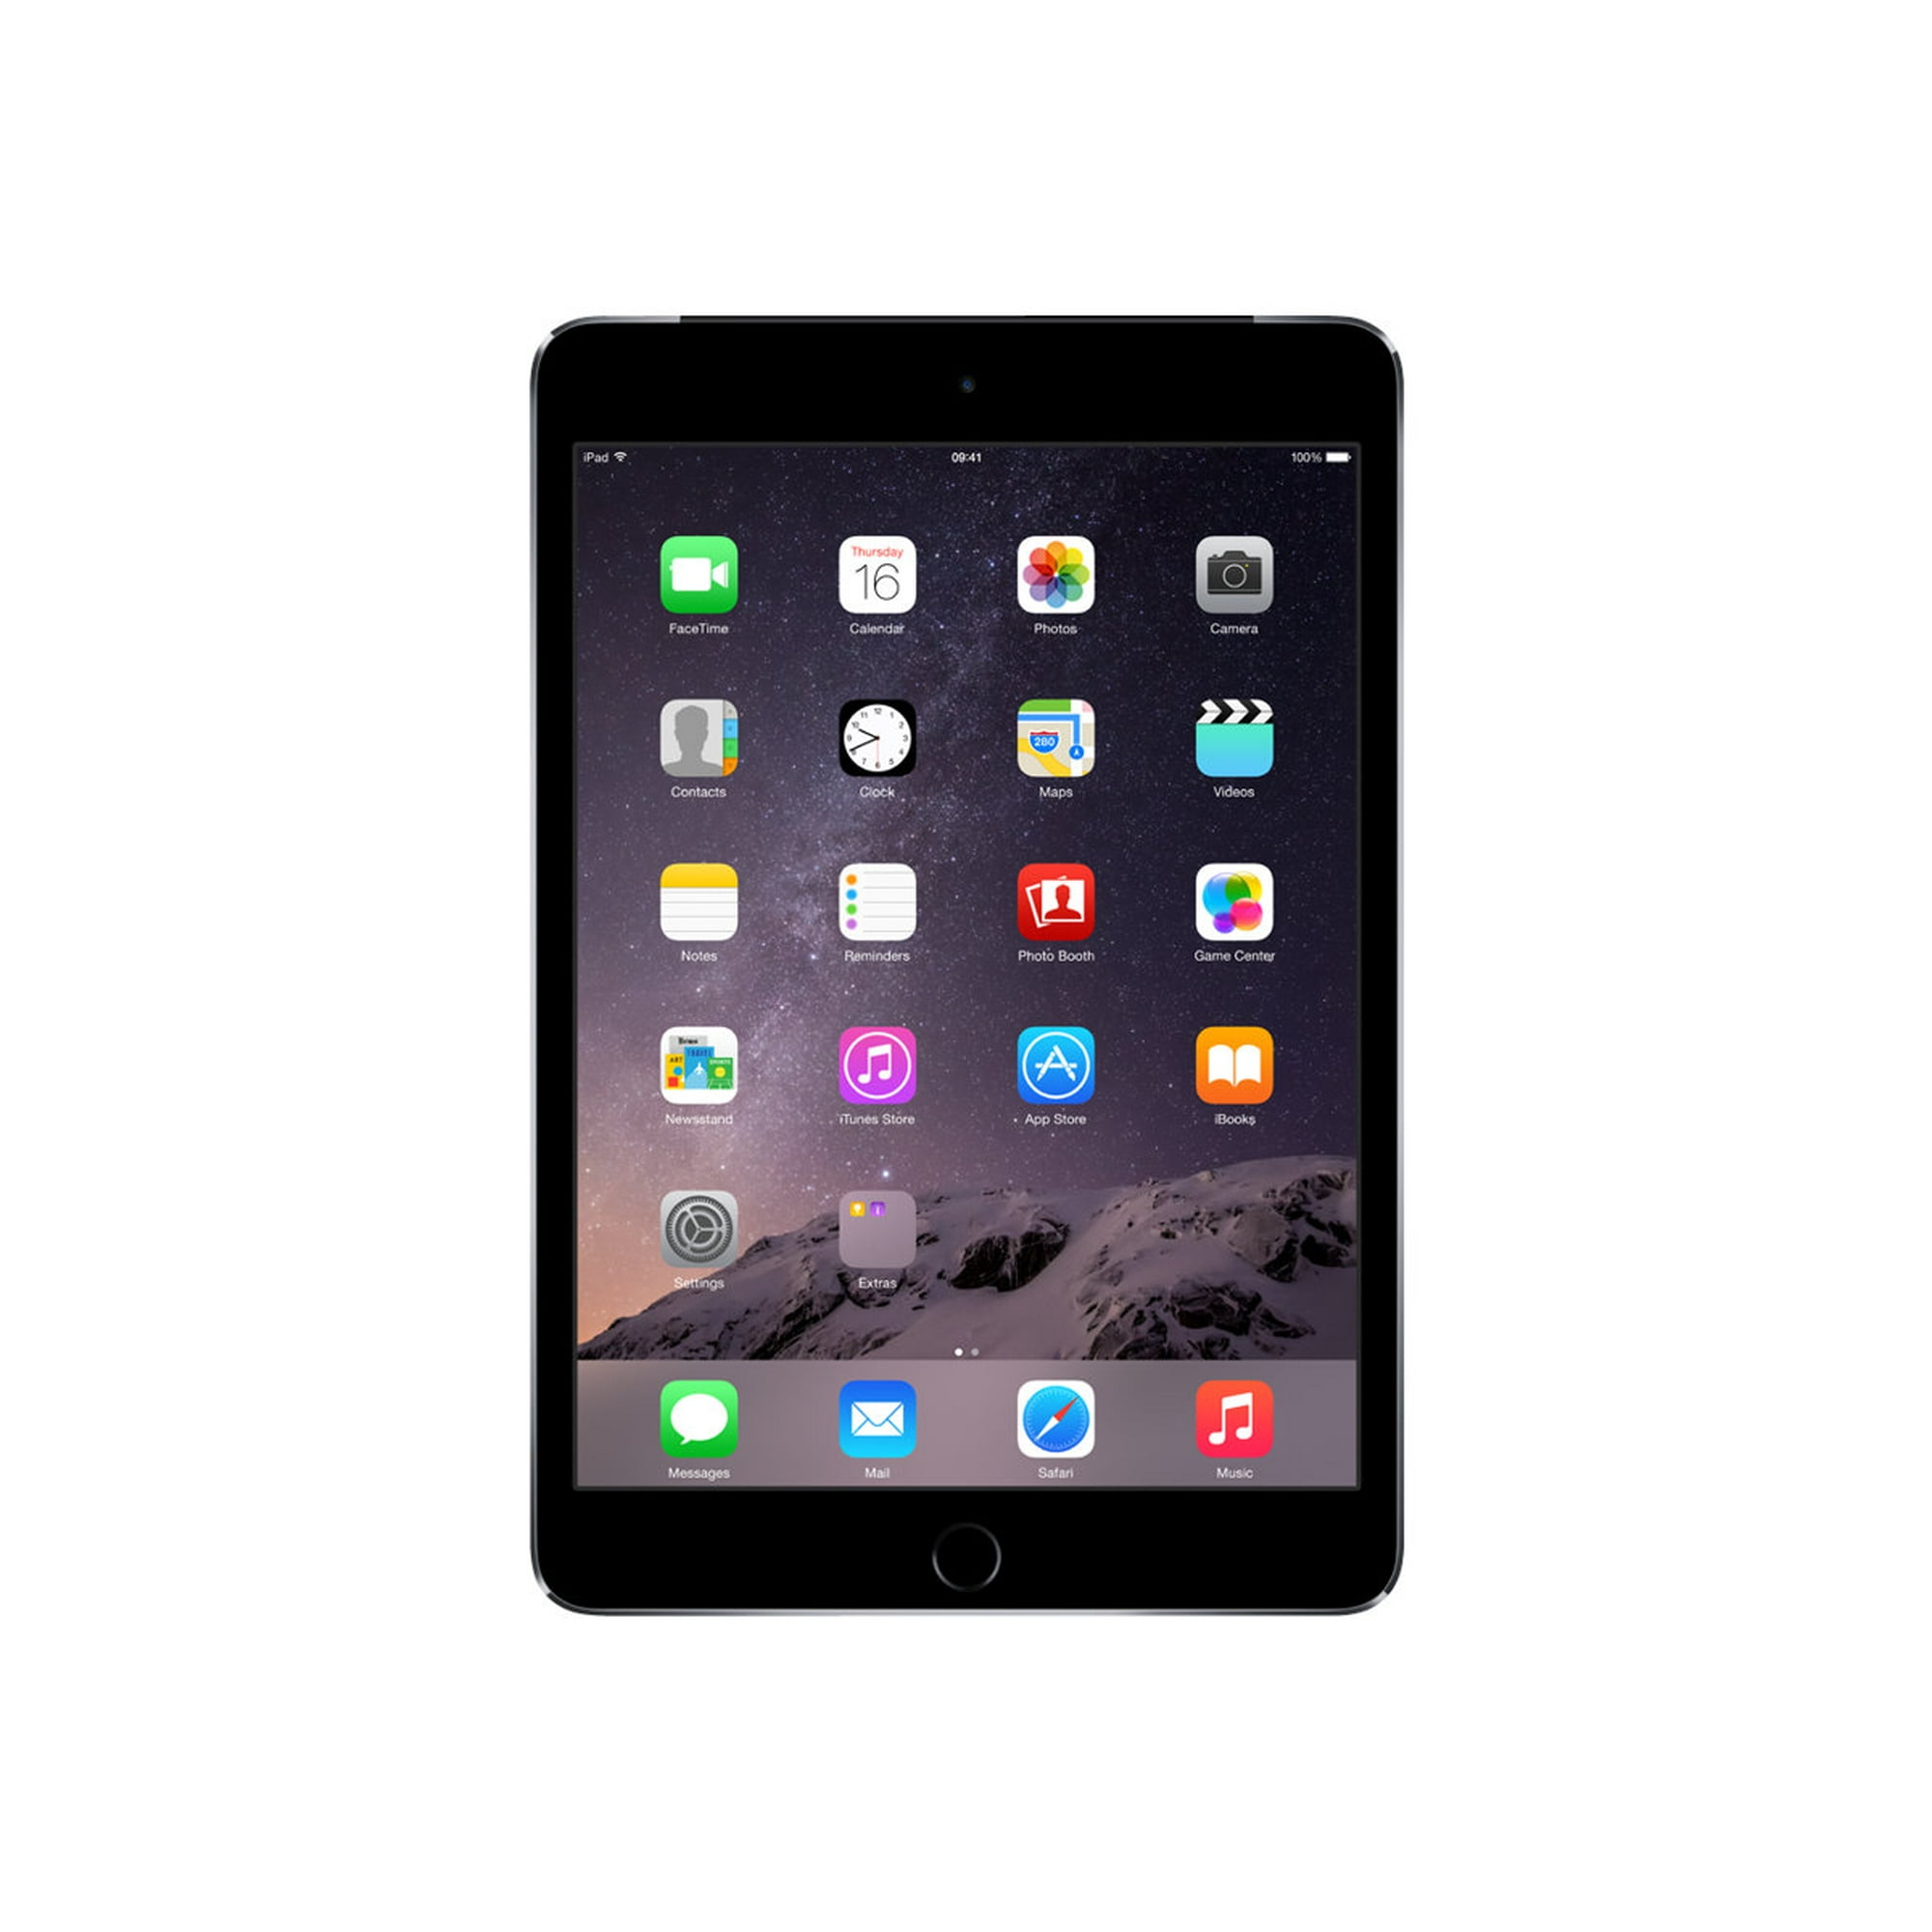 Apple iPad mini 3 Wi-Fi + Cellular - 3rd generation - tablet - 64 GB - 7.9